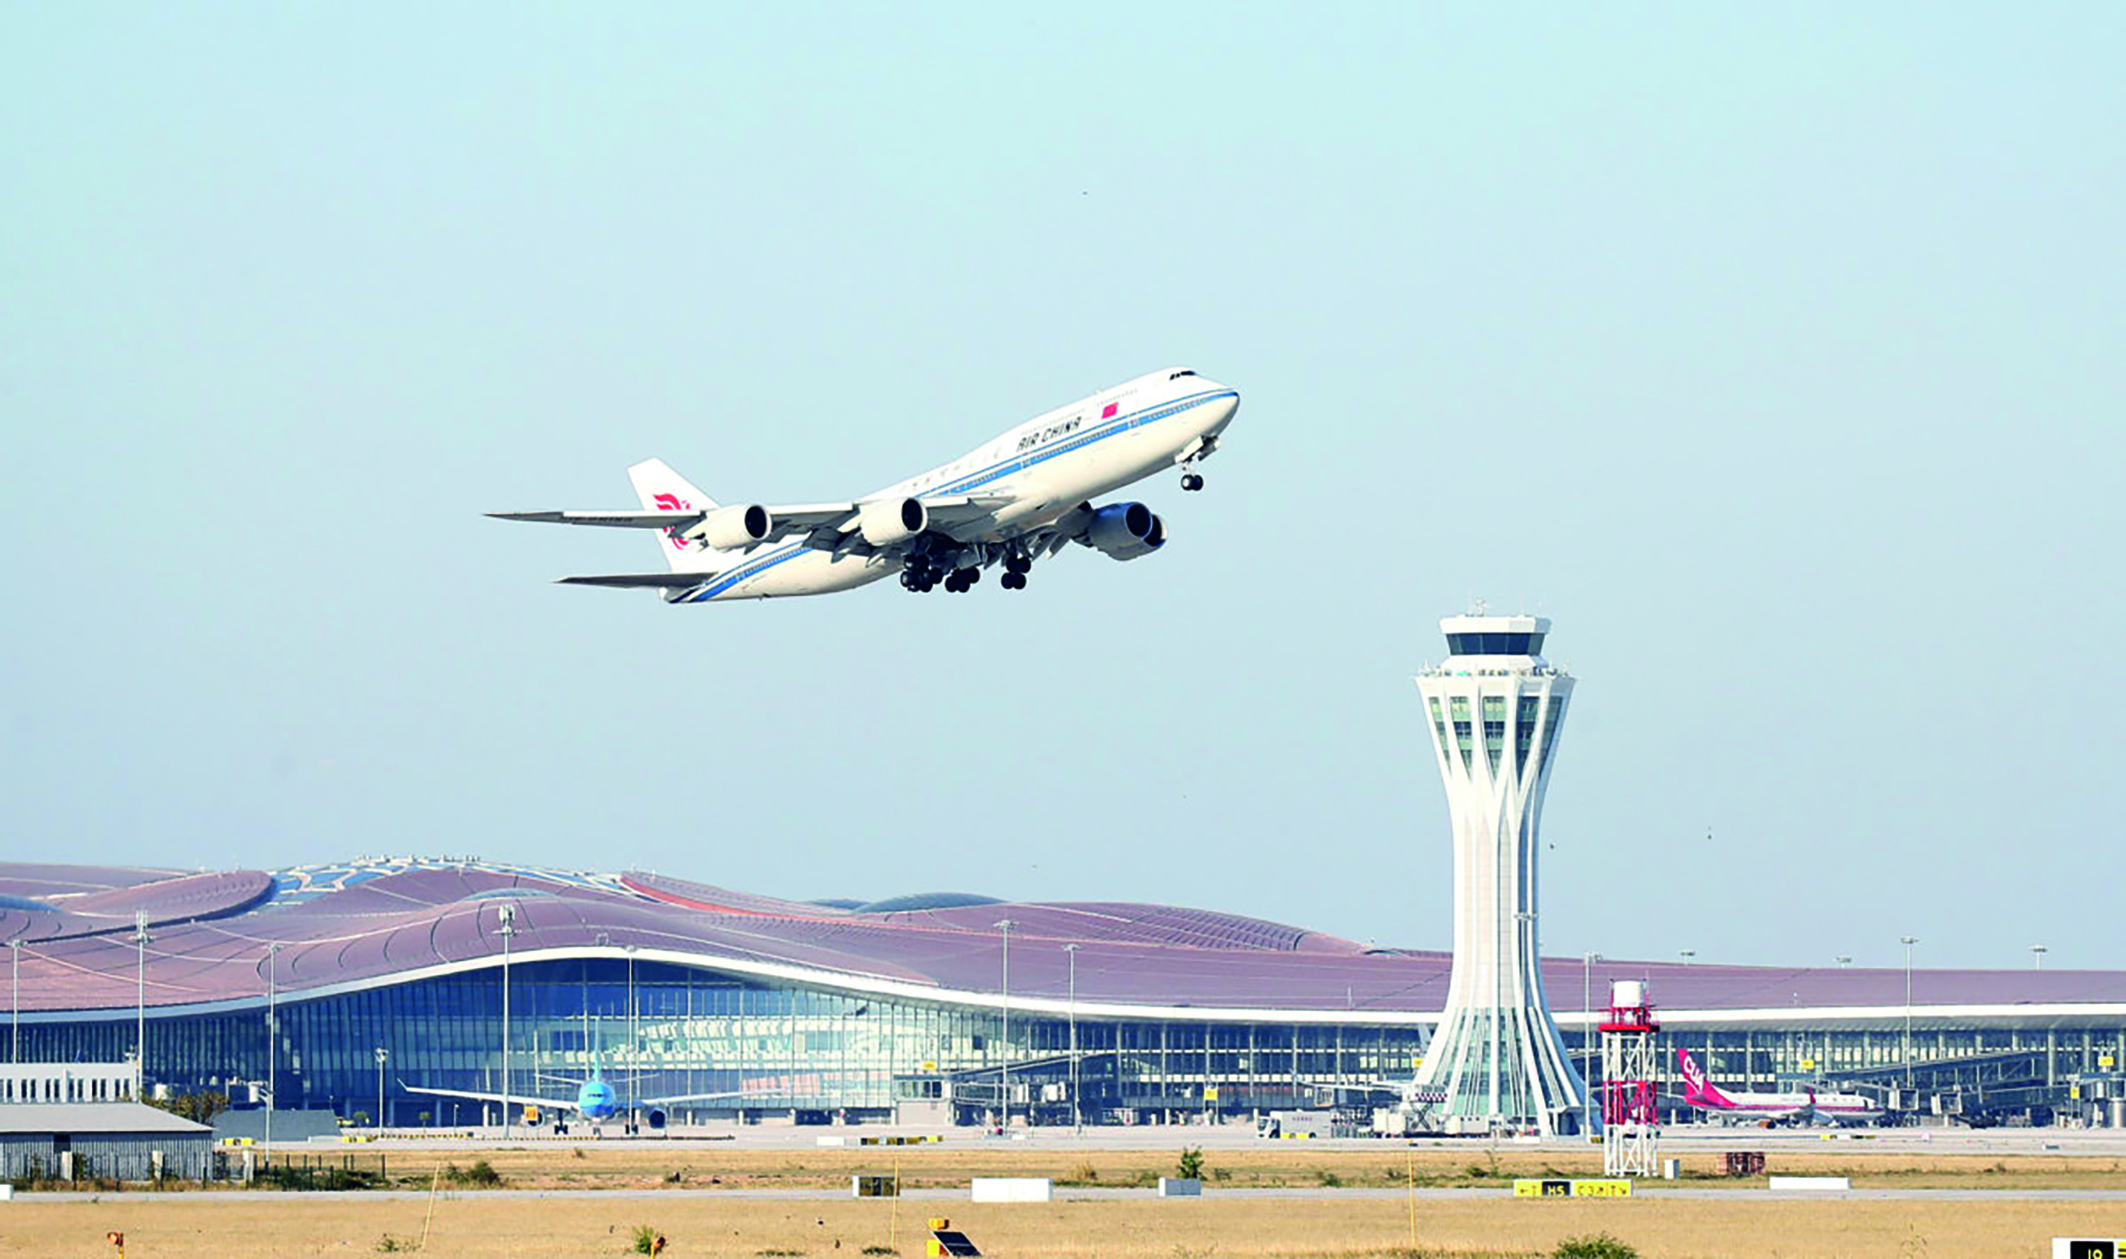 Çin ve Mısır arasındaki turizmin gelişmesiyle birlikte iki ülke arasındaki sivil havacılık endüstrisindeki alışveriş ve işbirliği de artış göstermektedir, Pekin Daxing Uluslararası Havalimanı. (Zou Hong /China Daily, 2019)